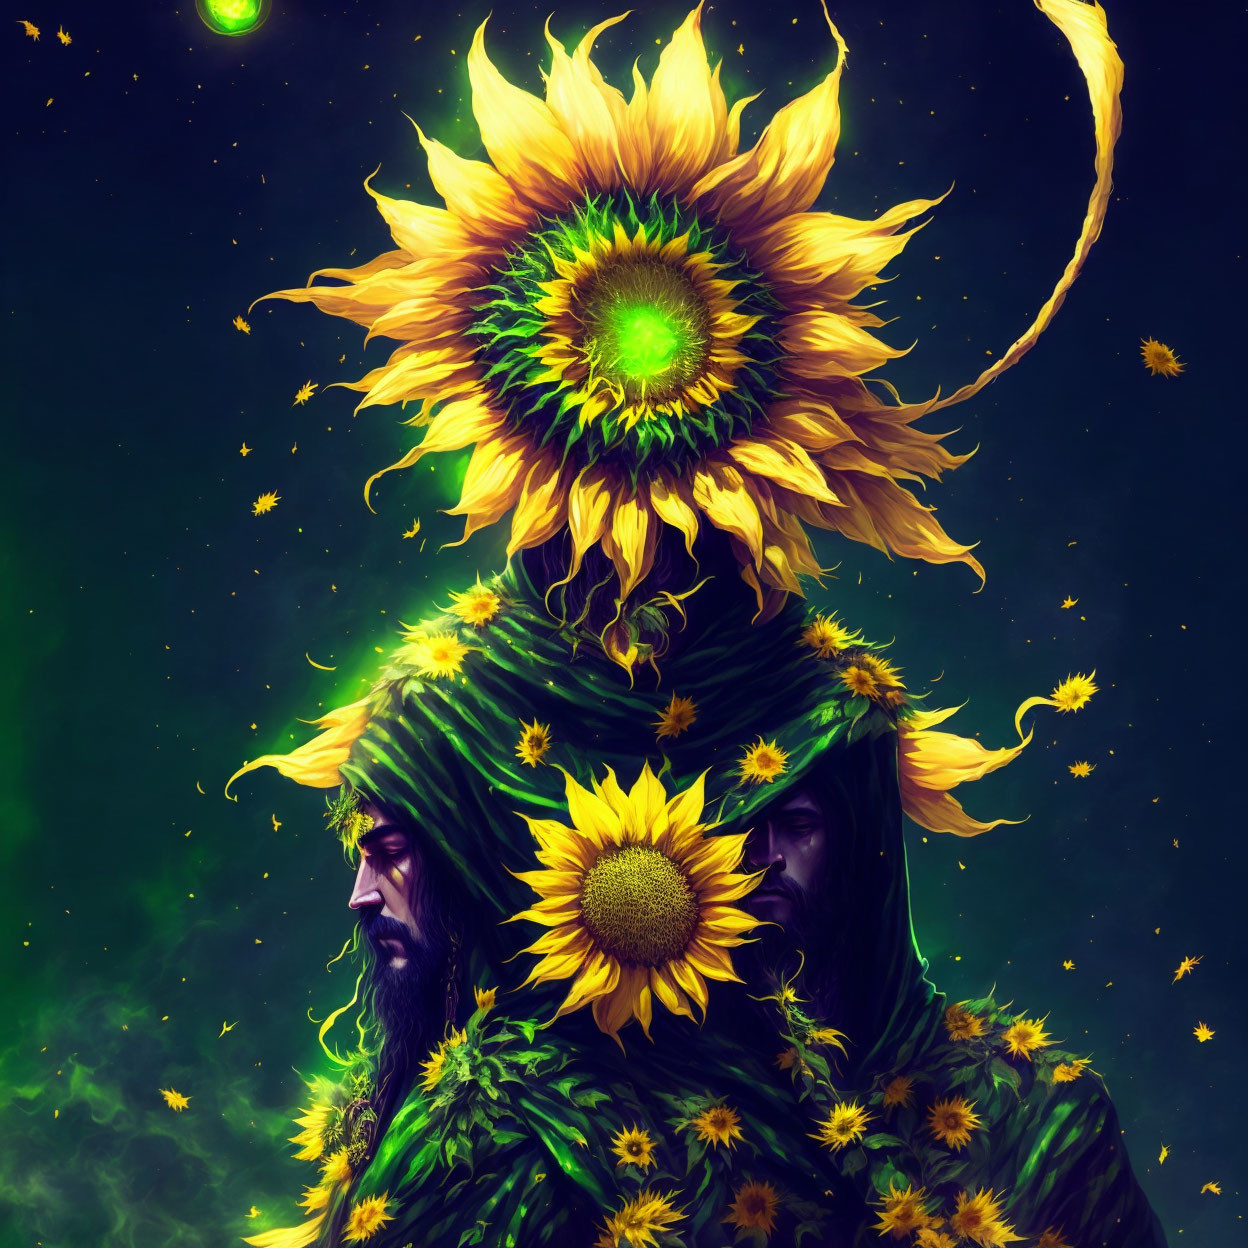 Sunflower wizard 